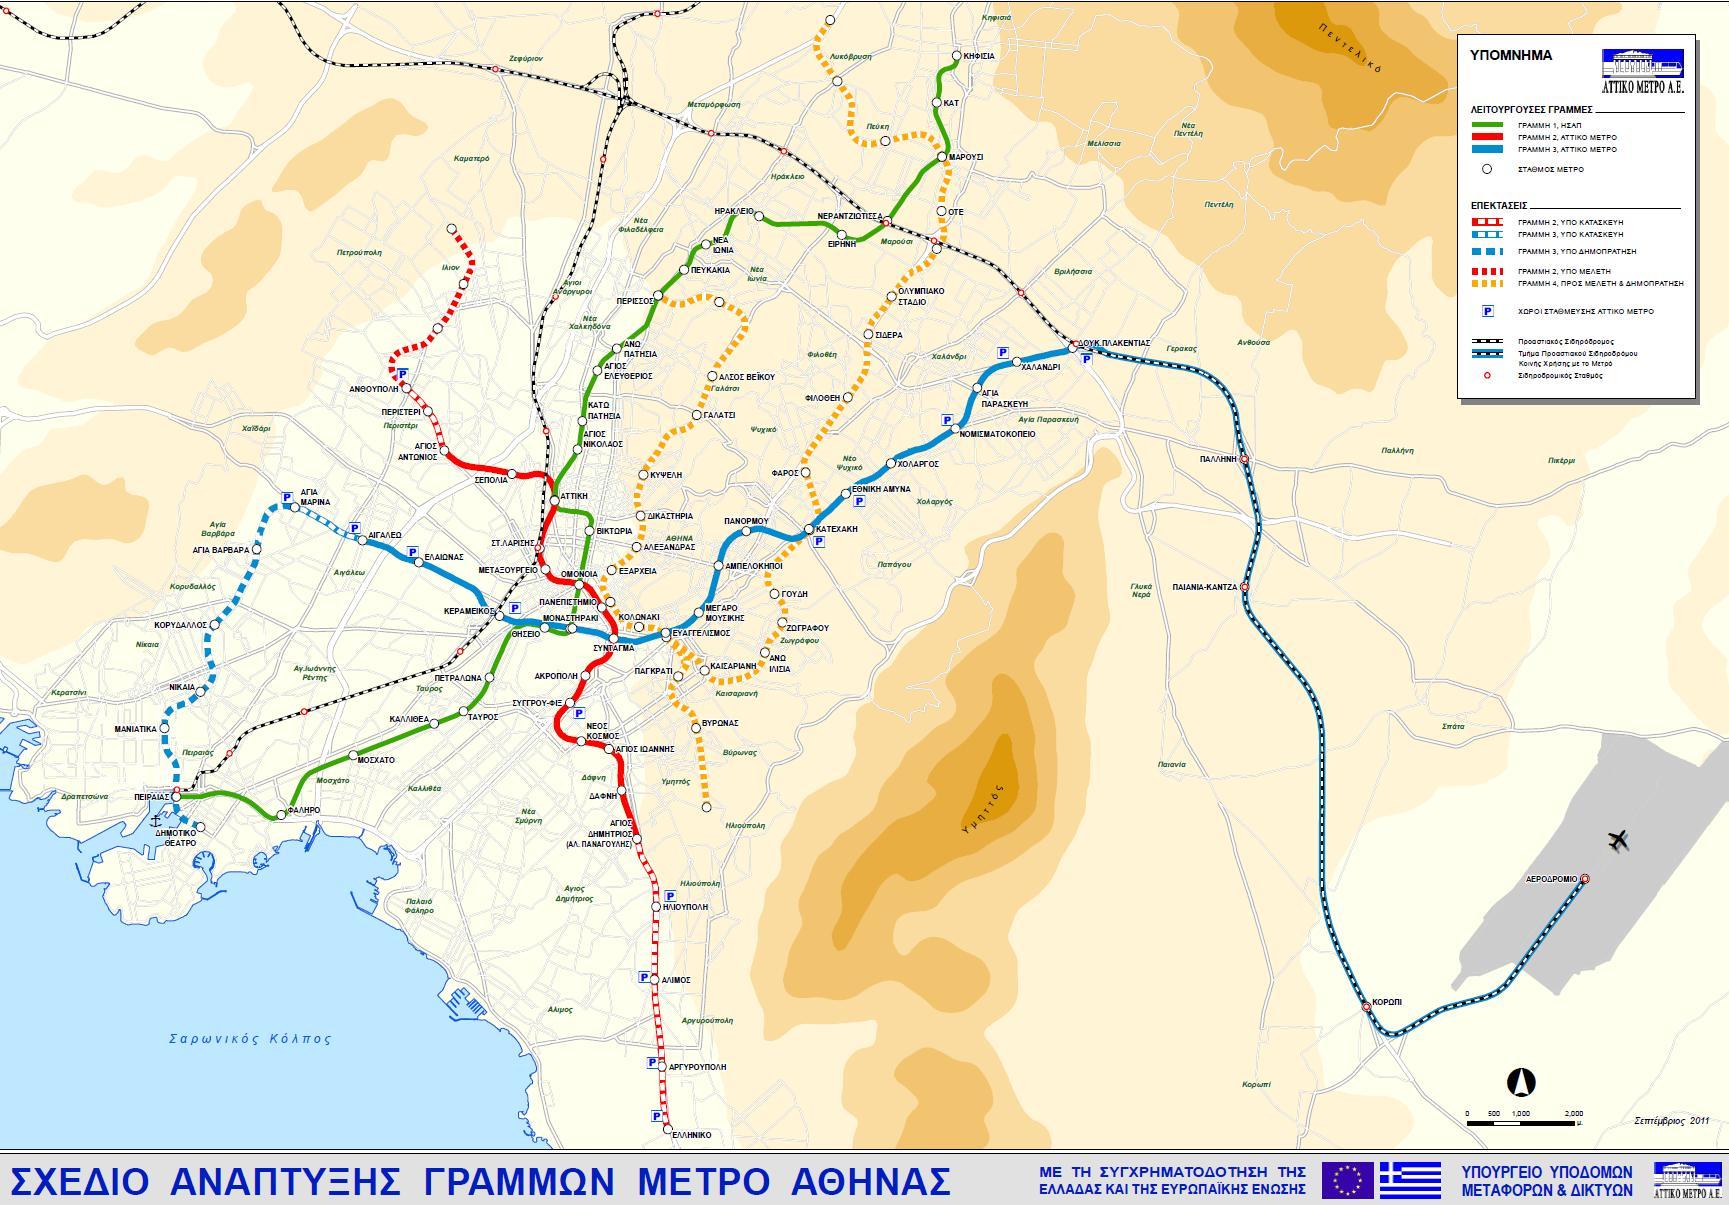 Σχέδιο Ανάπτυξης Γραμμών Μετρό, Σεπτέμβριος 2011. ΠΗΓΗ: ΑΤΤΙΚΟ ΜΕΤΡΟ (κλικ για μεγέθυνση)